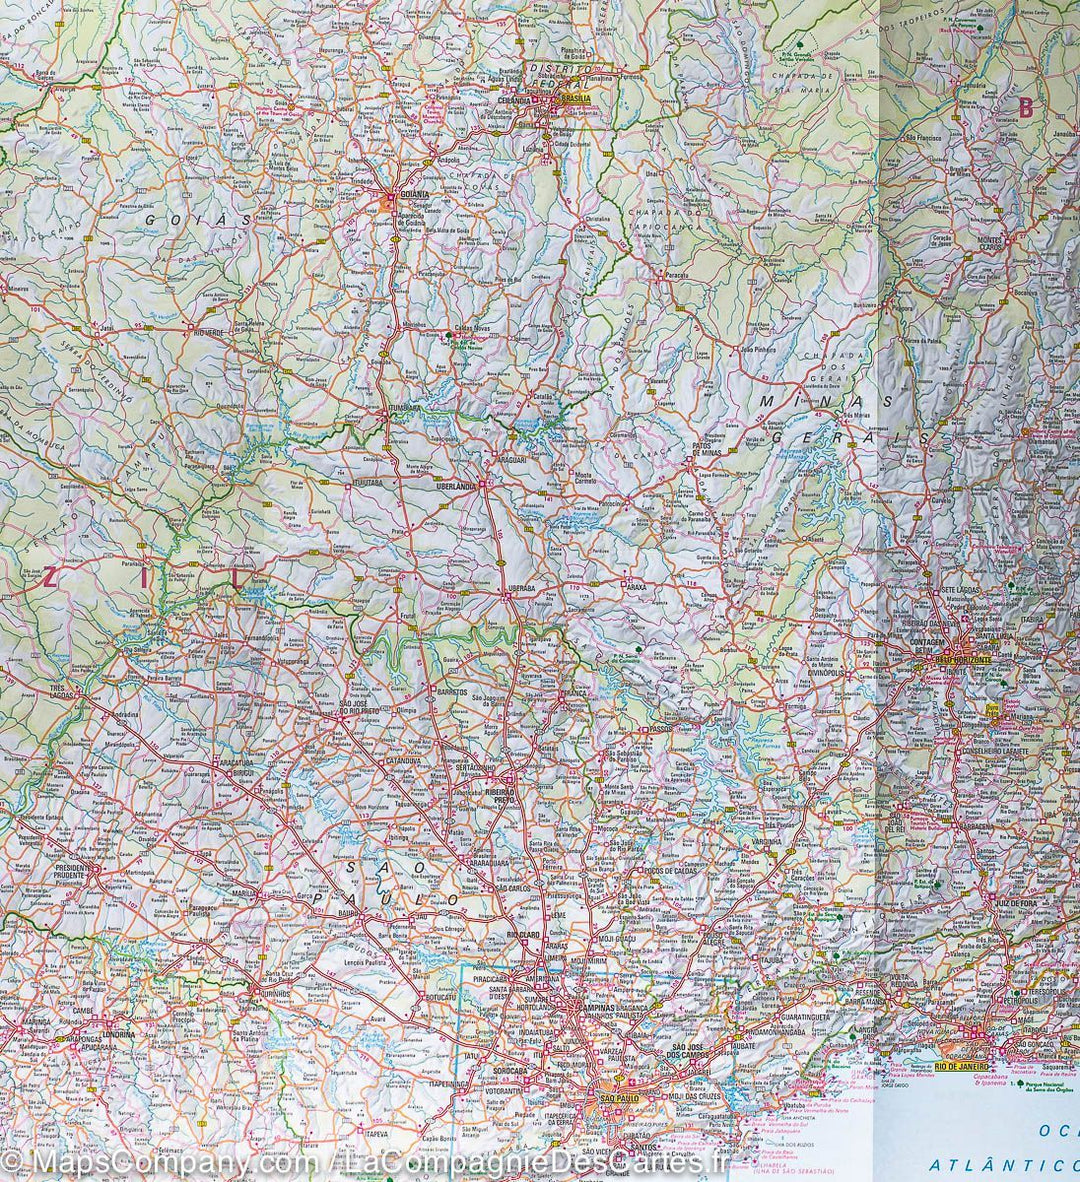 Carte routière imperméable - Brésil Centre & sud | Nelles Map carte pliée Nelles Verlag 